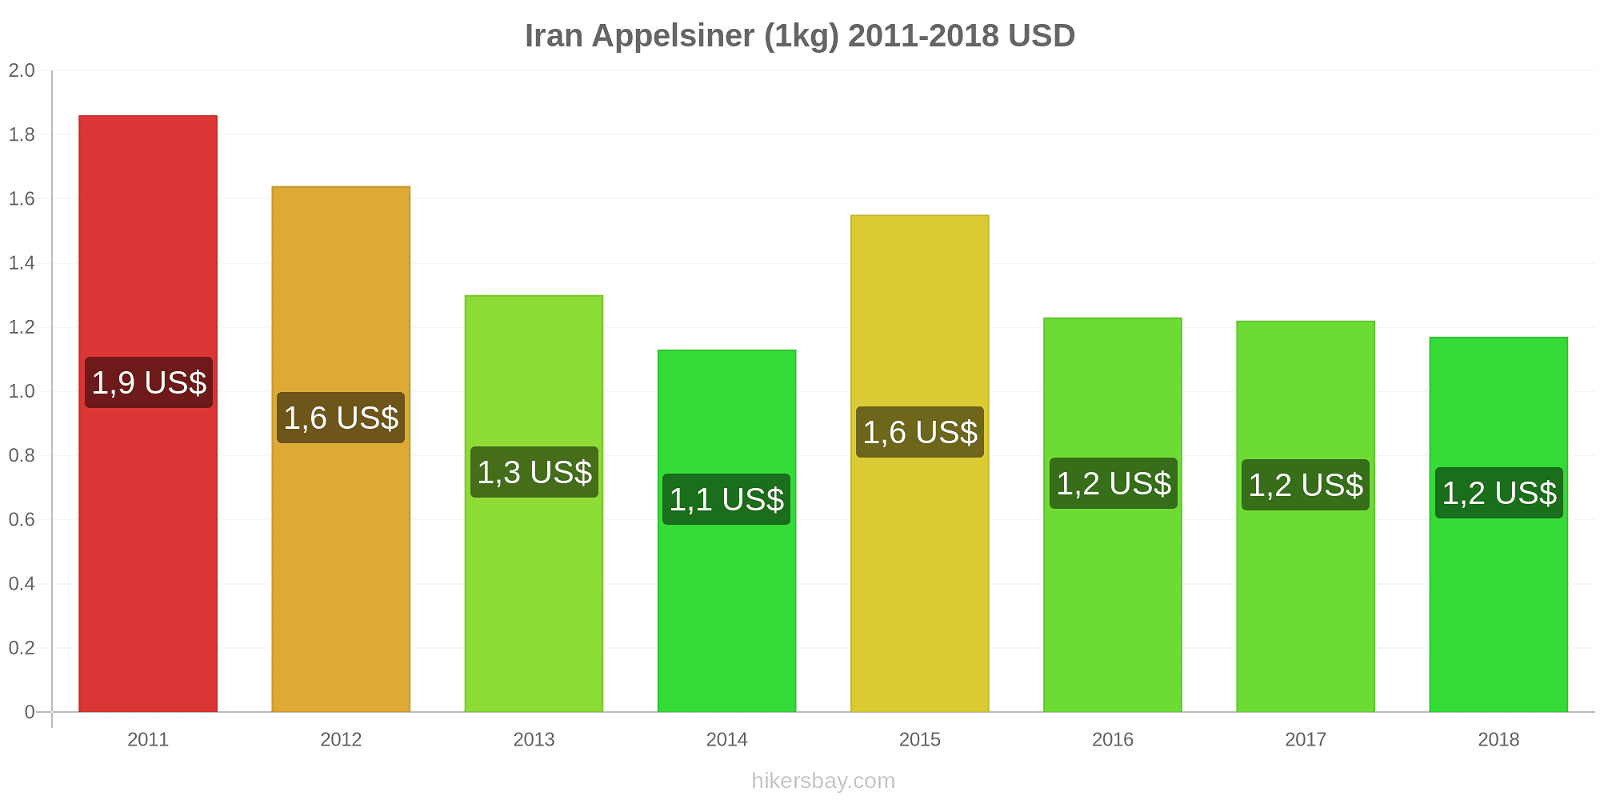 Iran prisændringer Appelsiner (1kg) hikersbay.com